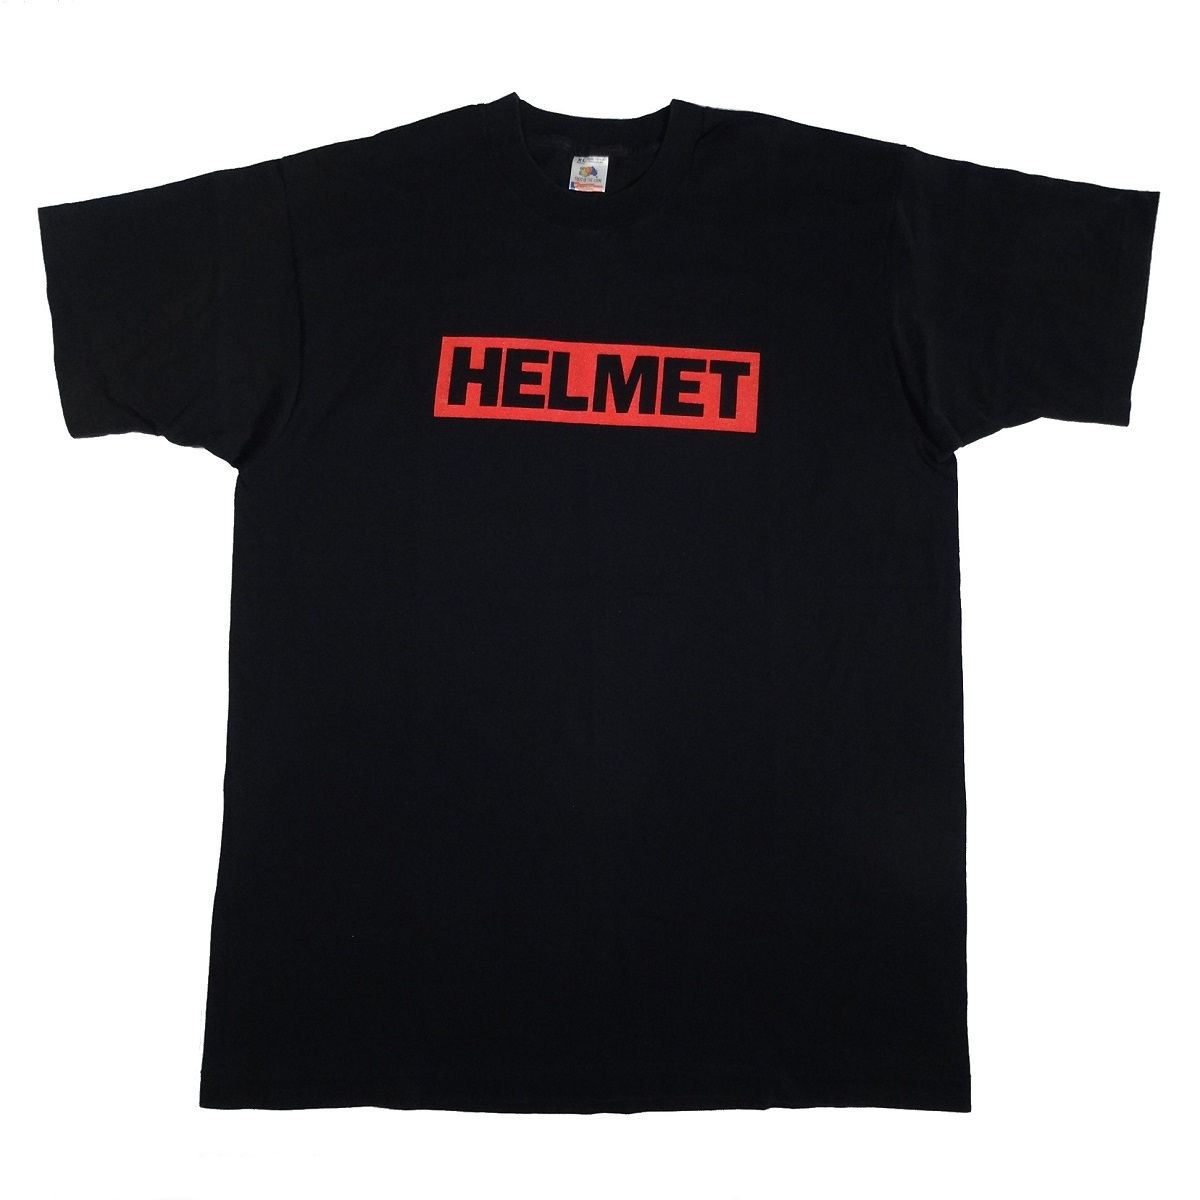 helmet meantime tour 1992 vintage 90s concert t shirt front of shirt